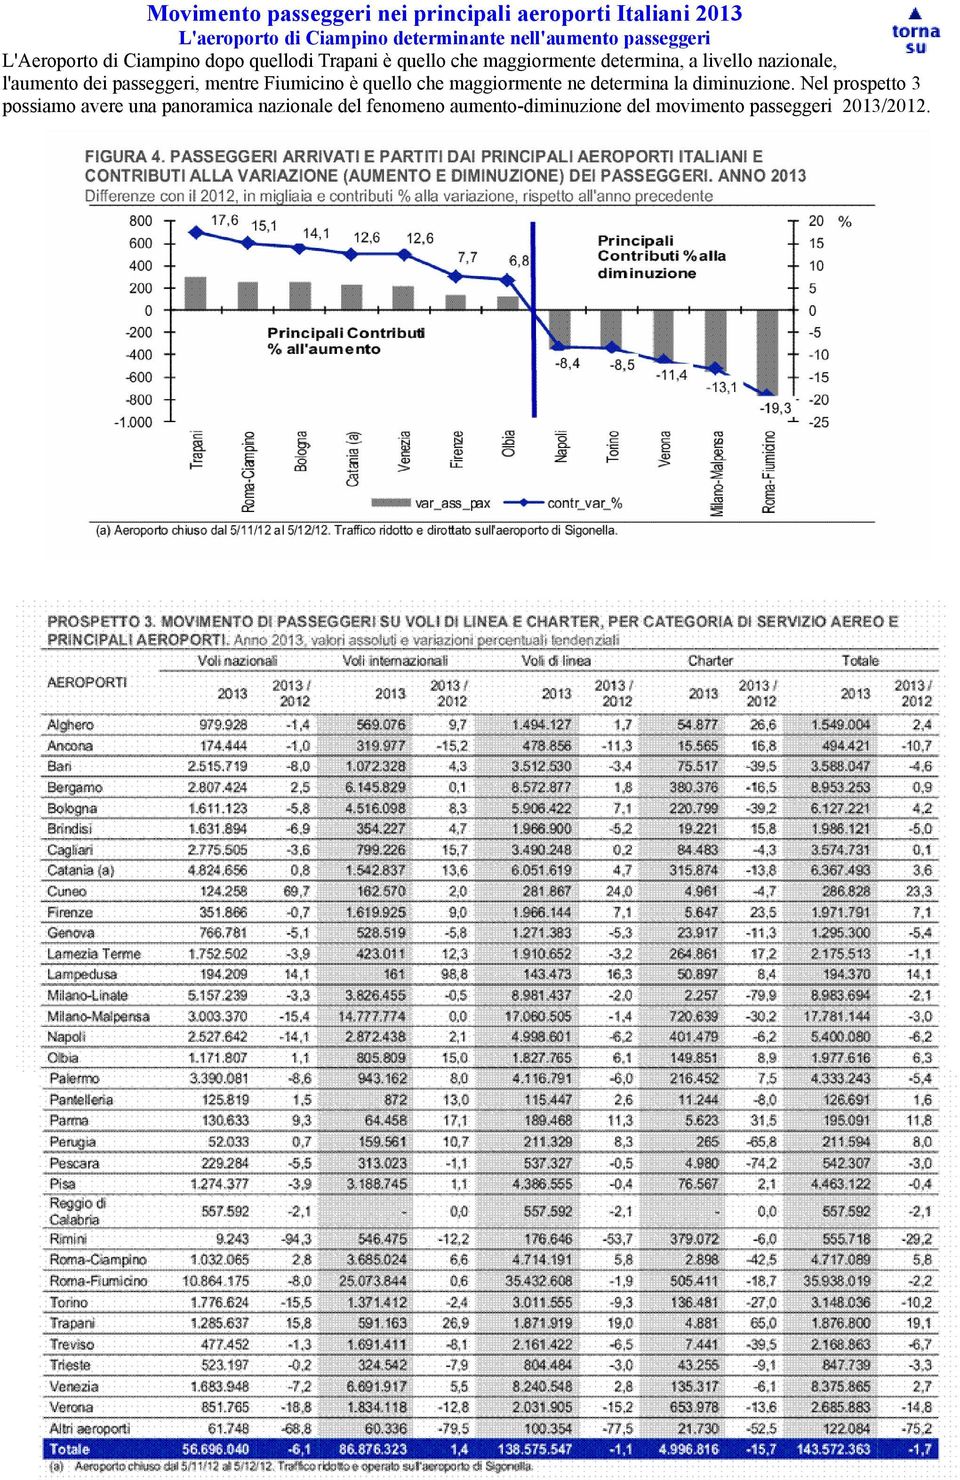 nazionale, l'aumento dei passeggeri, mentre Fiumicino è quello che maggiormente ne determina la diminuzione.